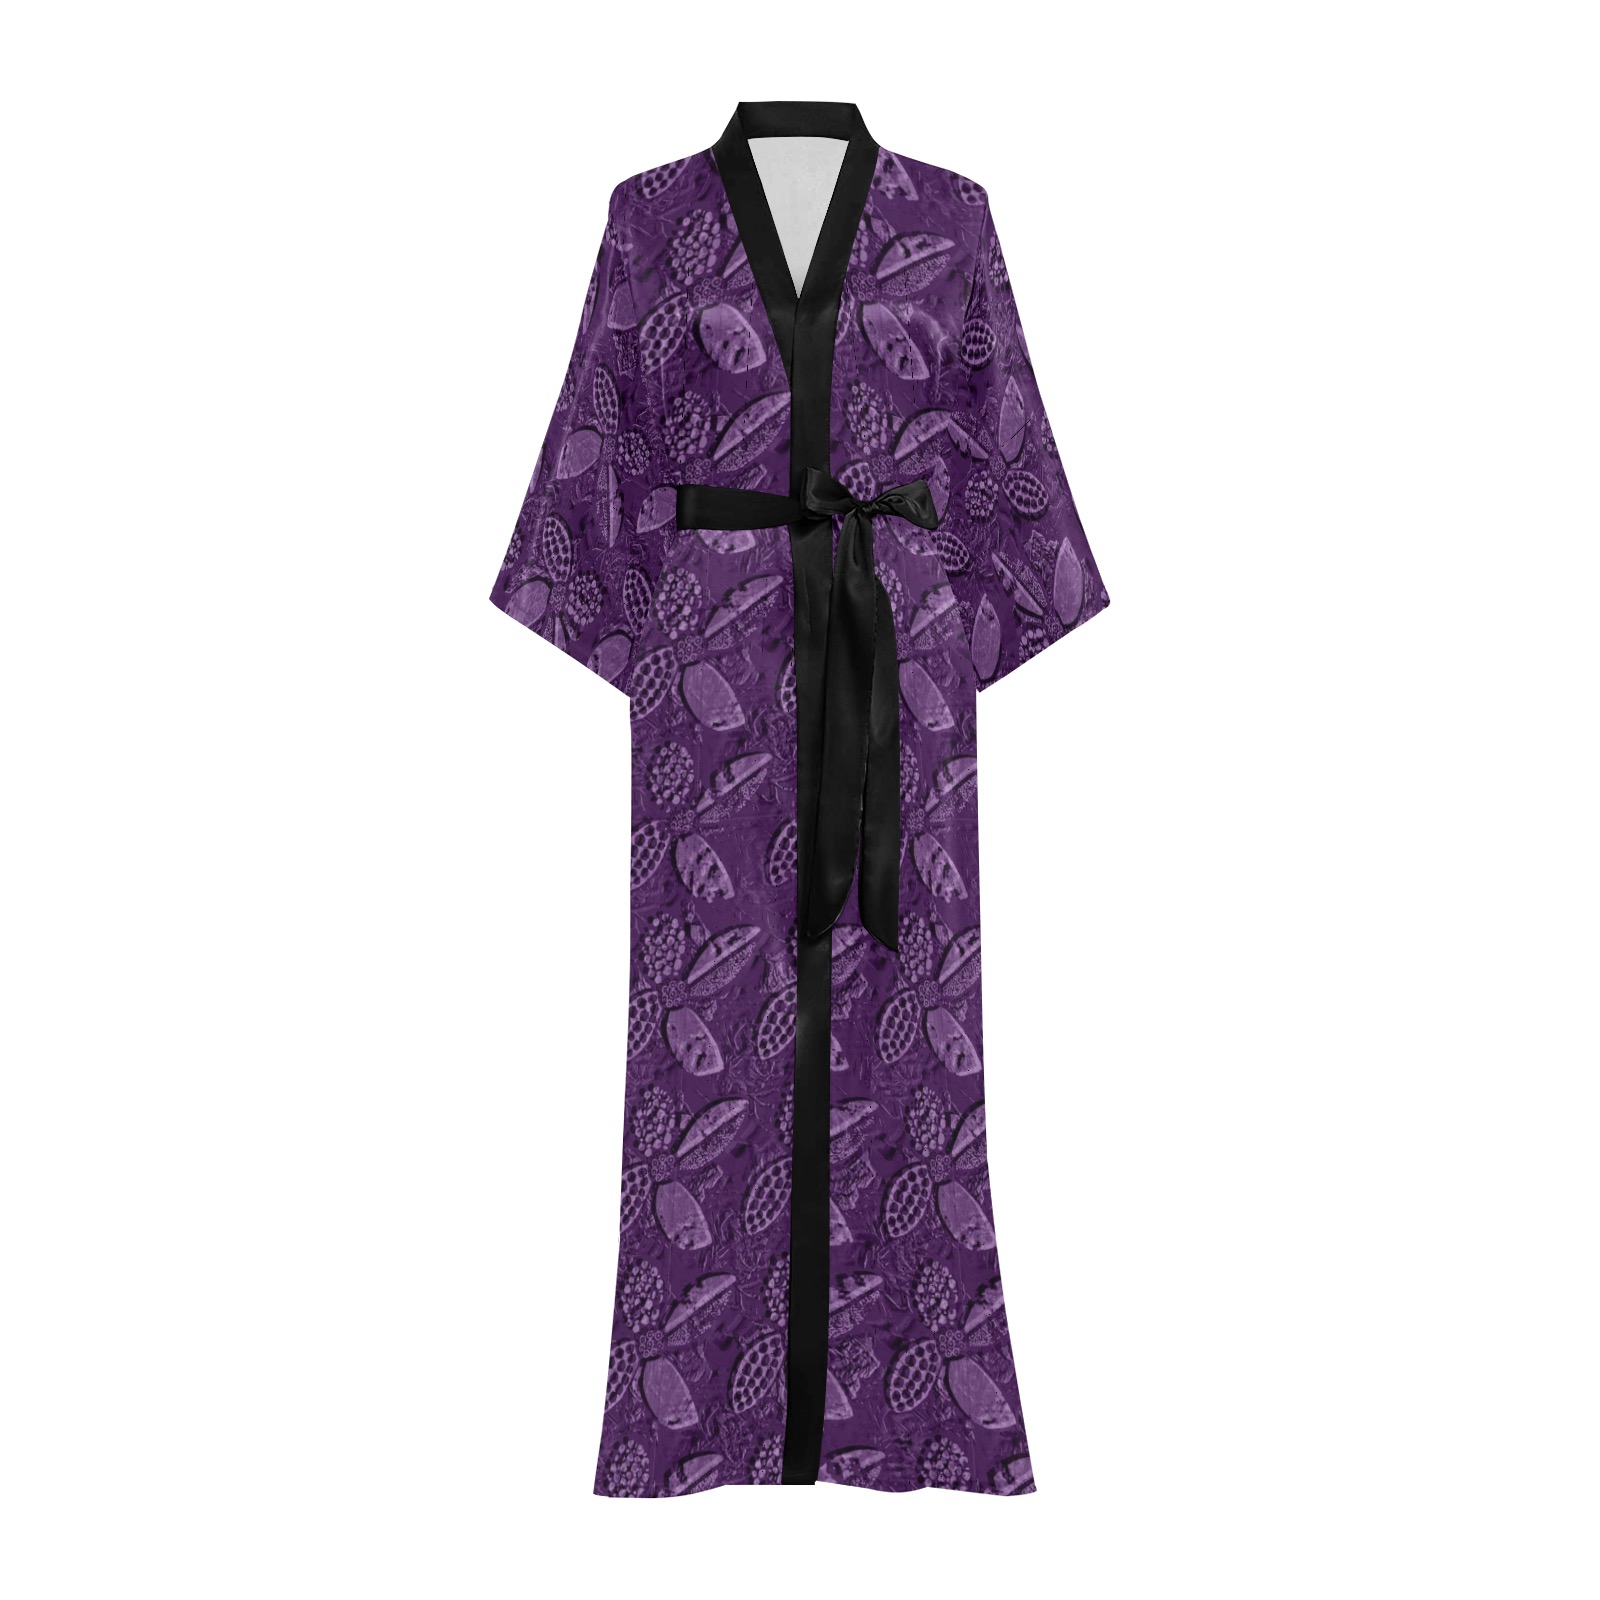 Floral pattern Long Kimono Robe